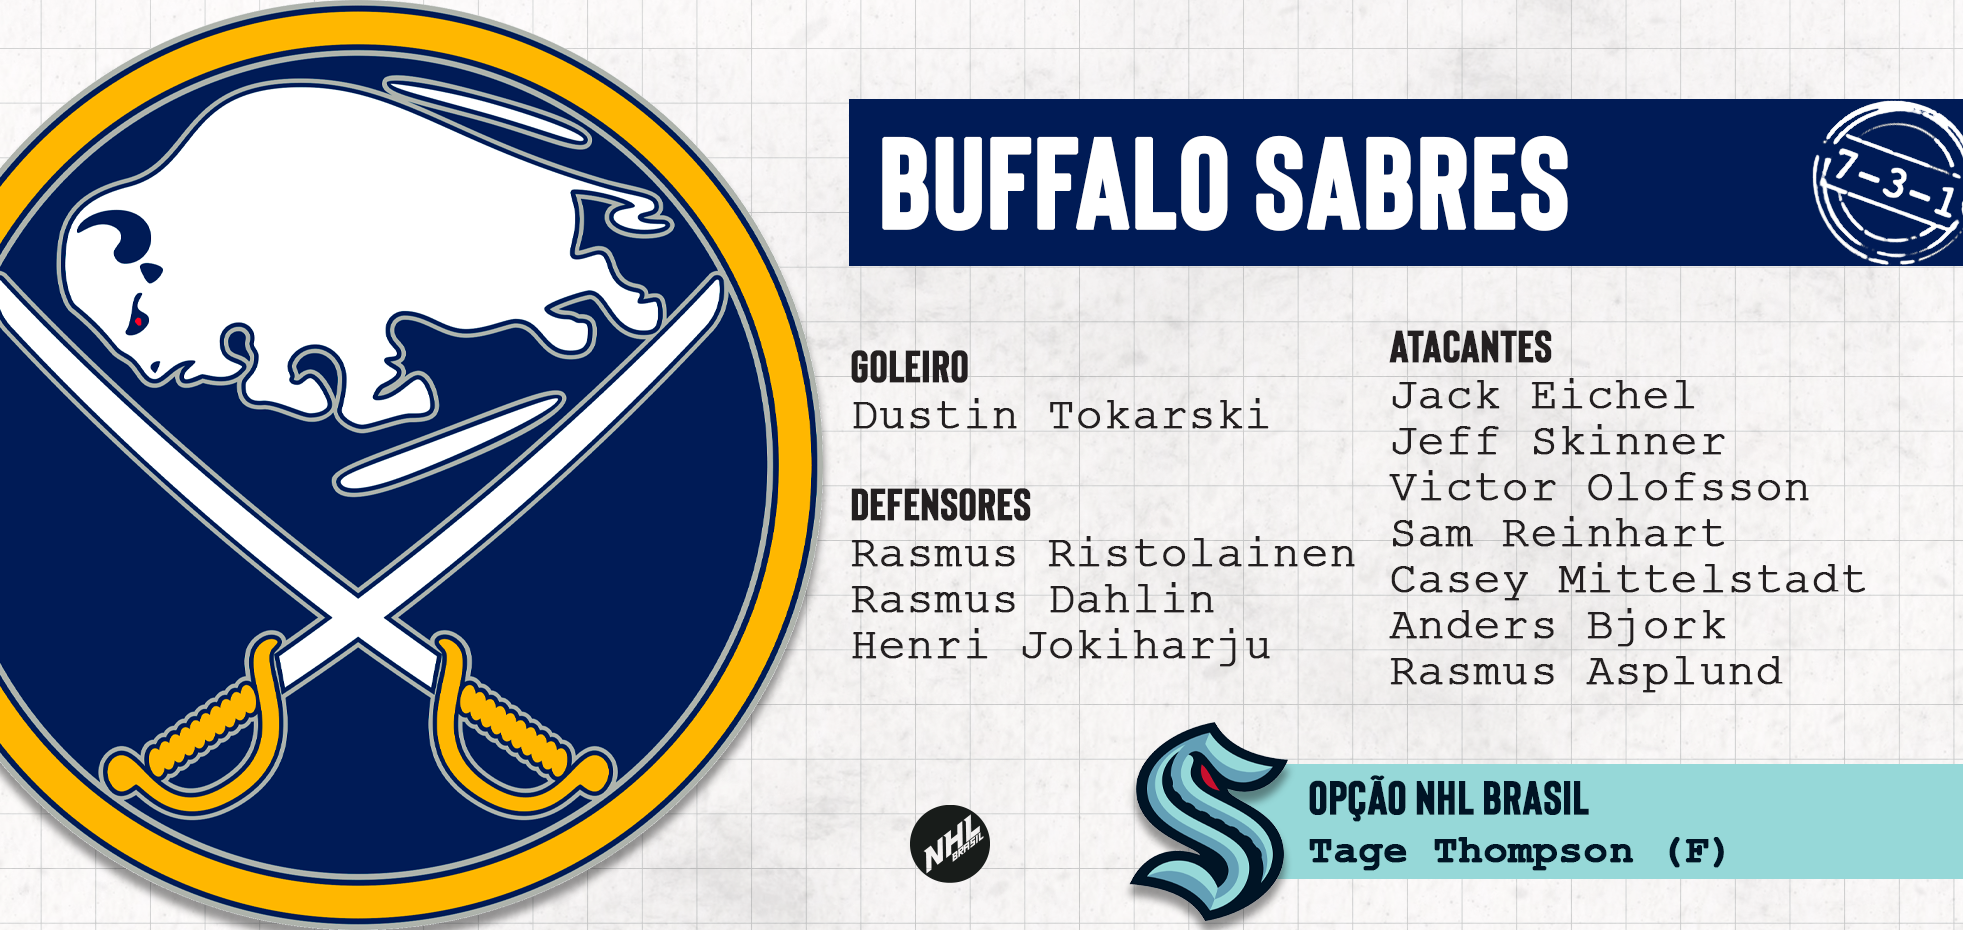 BUFFALO SABRES - lista de jogadores protegidos na Divisão Atlântica da NHL